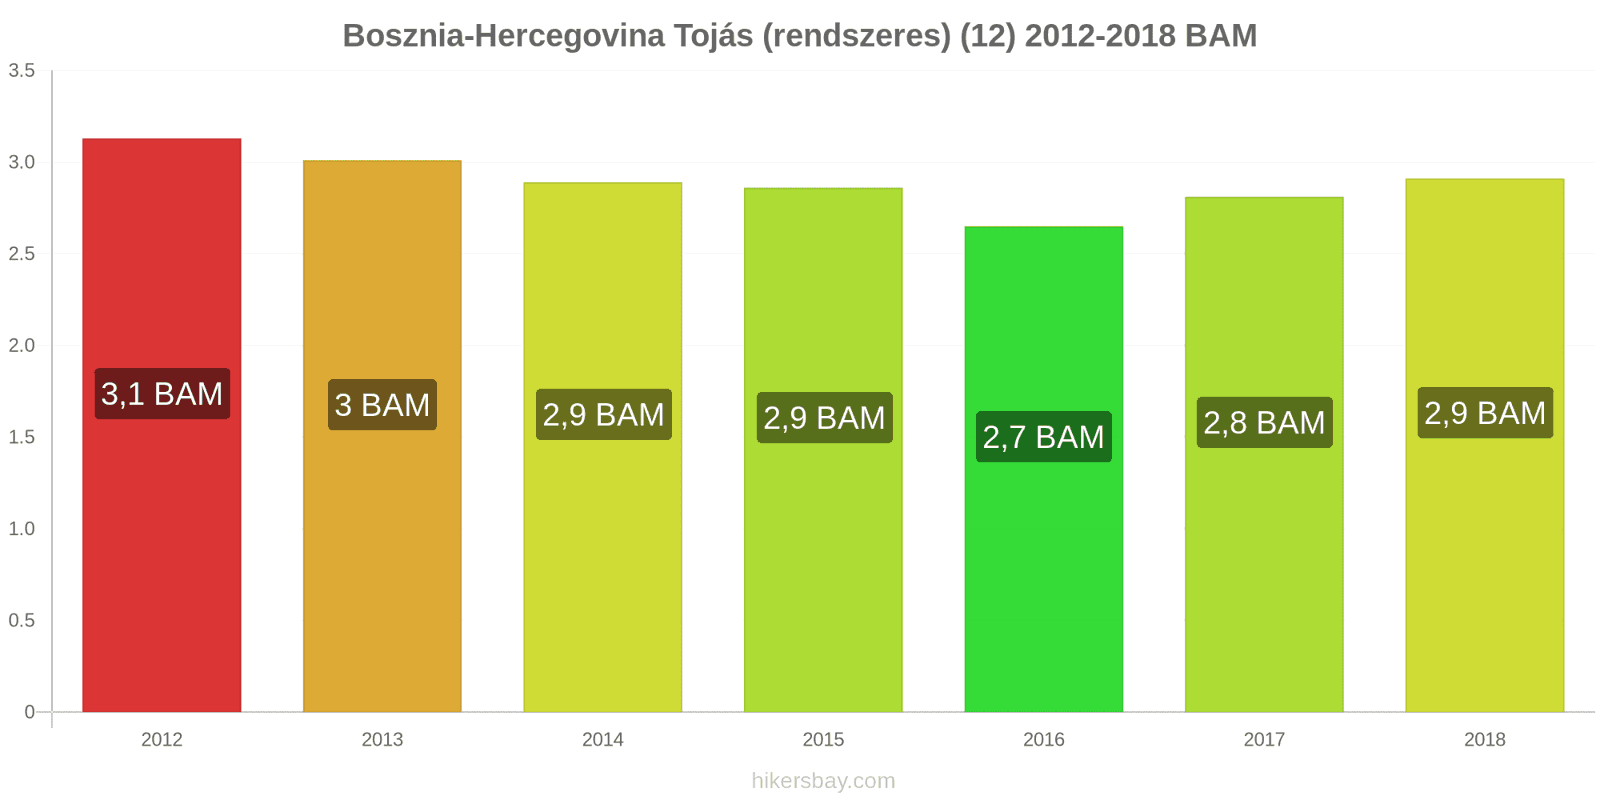 Bosznia-Hercegovina ár változások Tojás (normál) (12) hikersbay.com